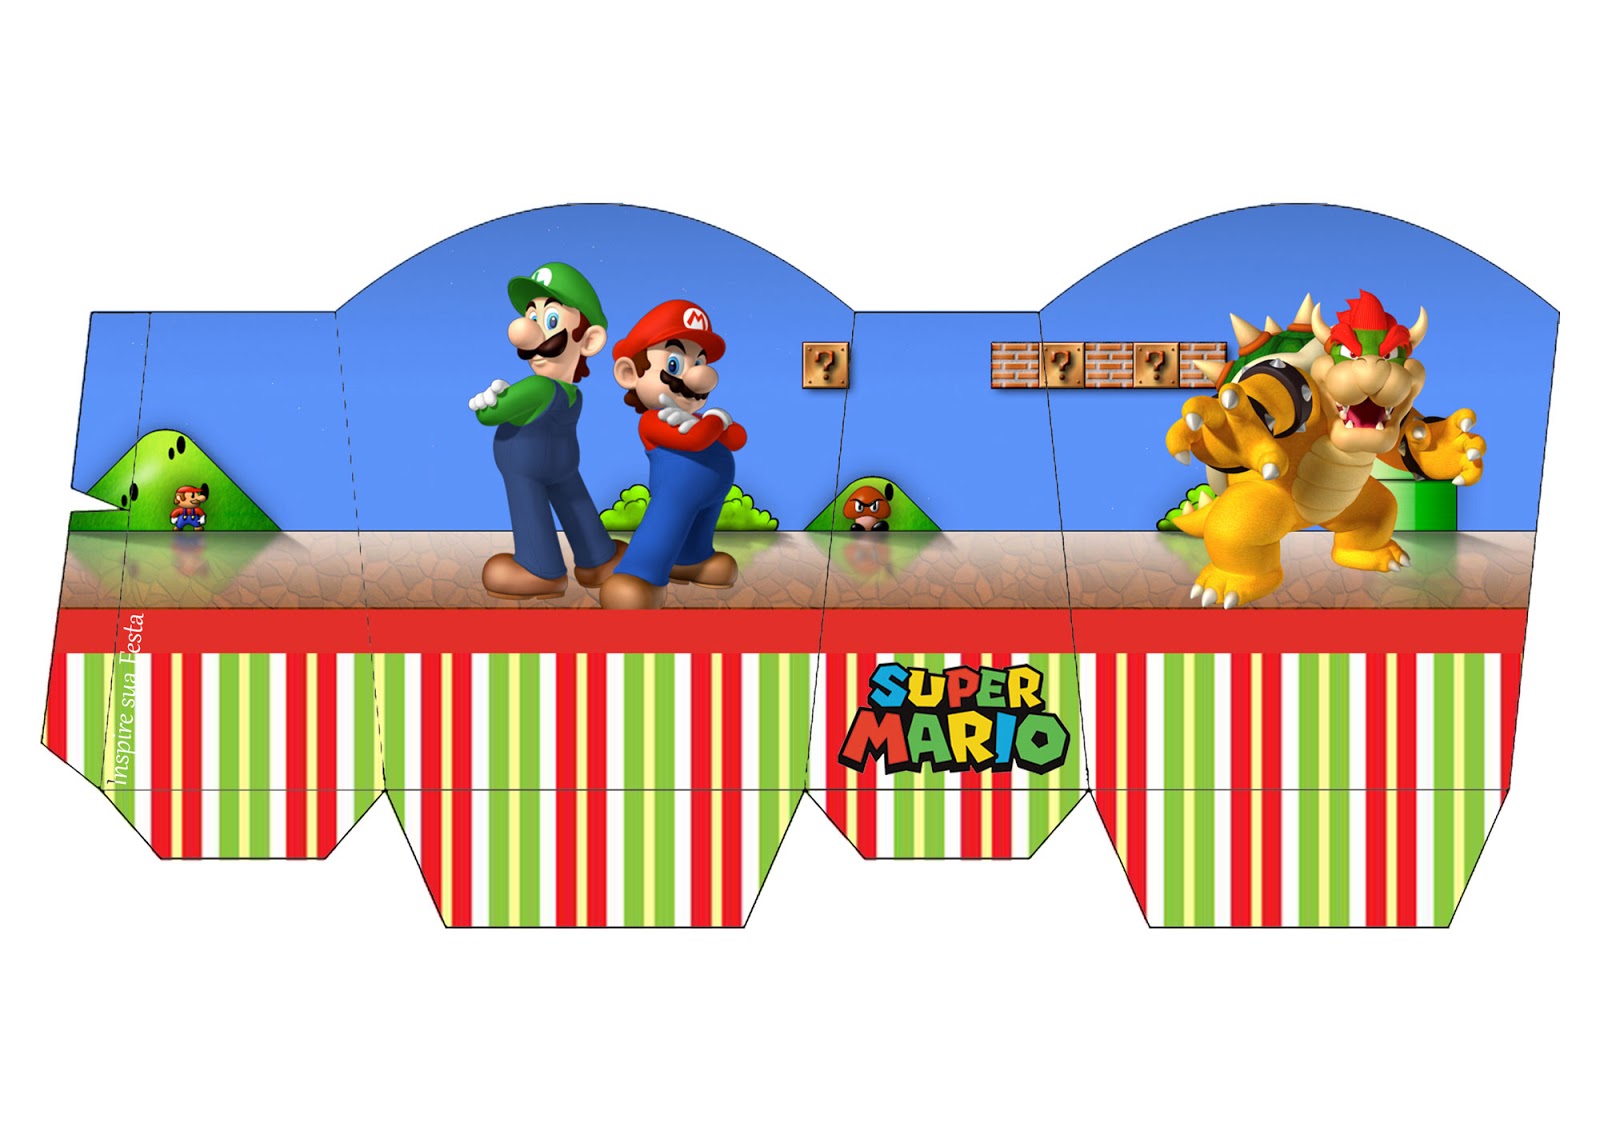 Fiestas Bonitas - Decoraciones de Mario Bros para fiesta